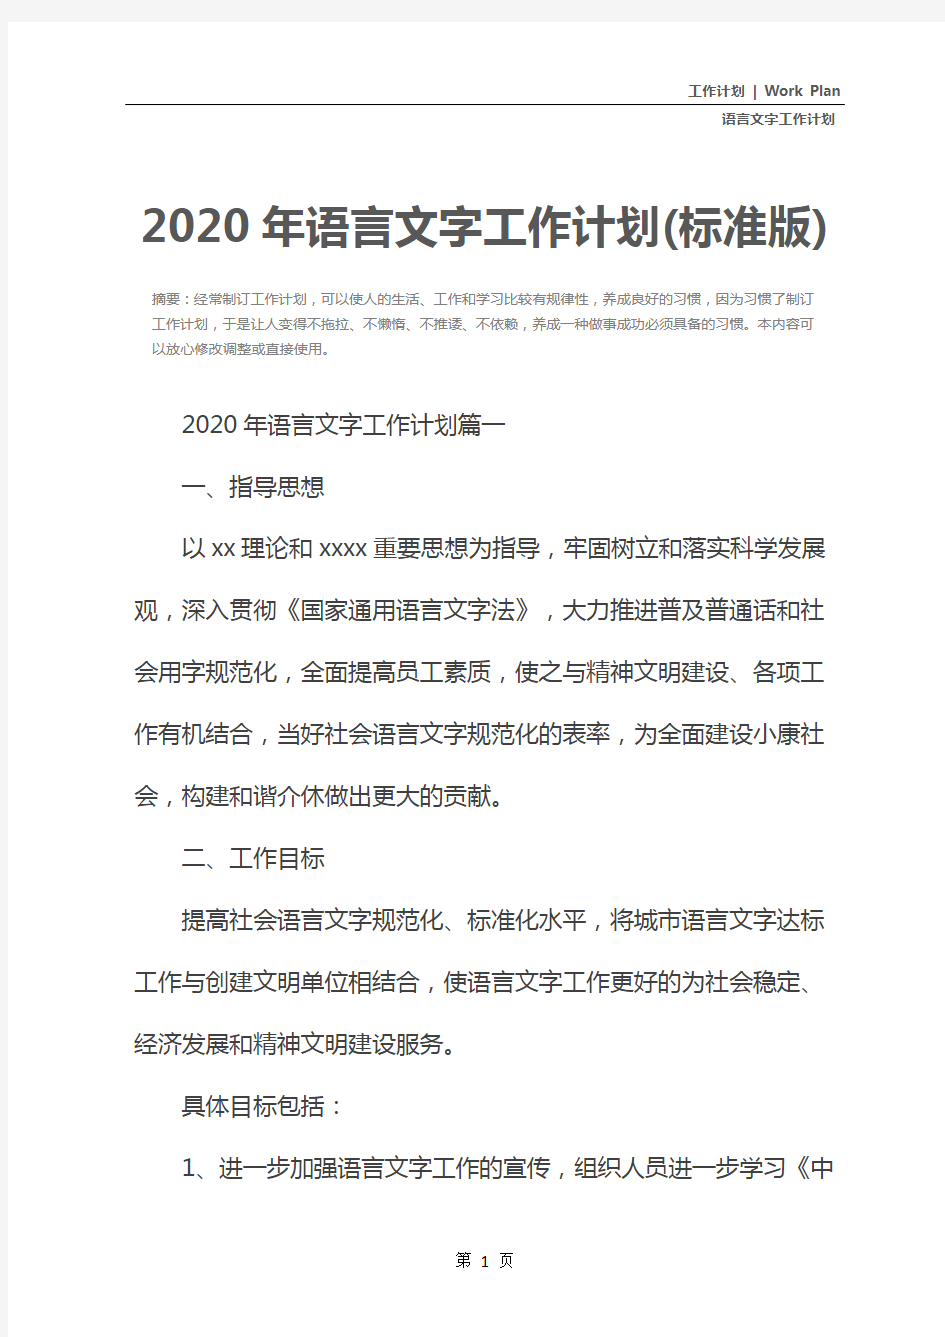 2020年语言文字工作计划(标准版)